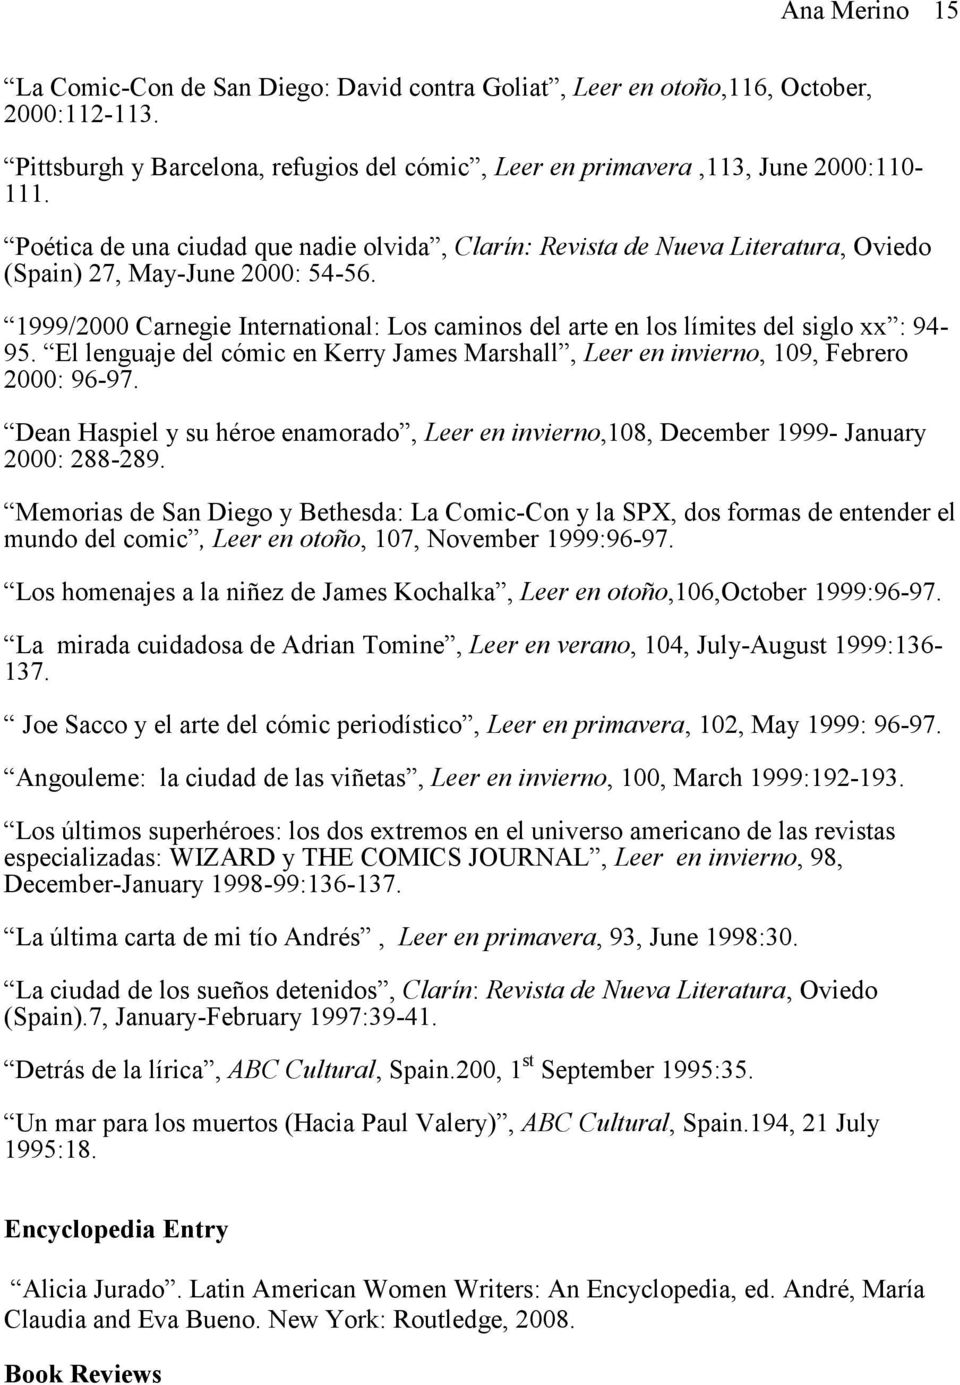 1999/2000 Carnegie International: Los caminos del arte en los límites del siglo xx : 94-95. El lenguaje del cómic en Kerry James Marshall, Leer en invierno, 109, Febrero 2000: 96-97.